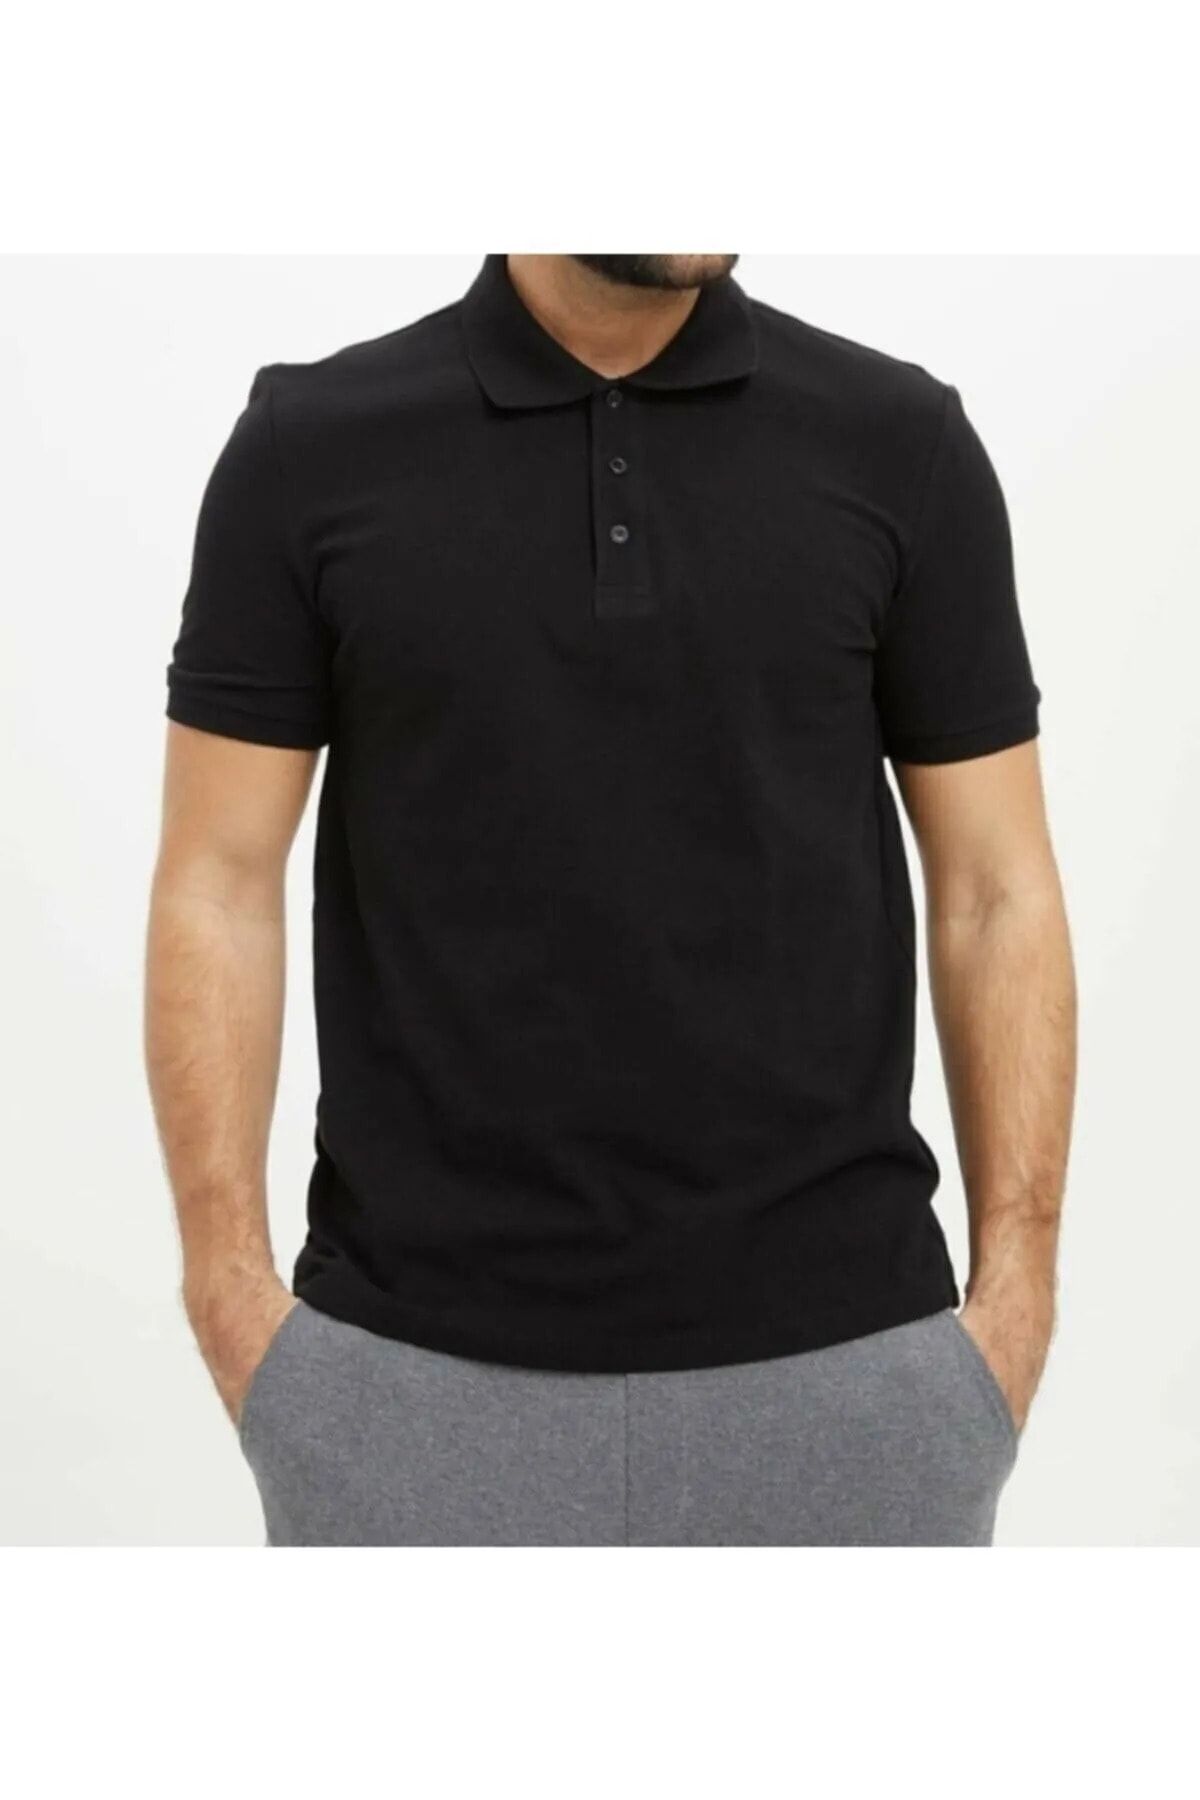 EKZMODA Siyah Tişört Erkek Polo Yakalı T-shirt - Üç Yıldızlı Ürün